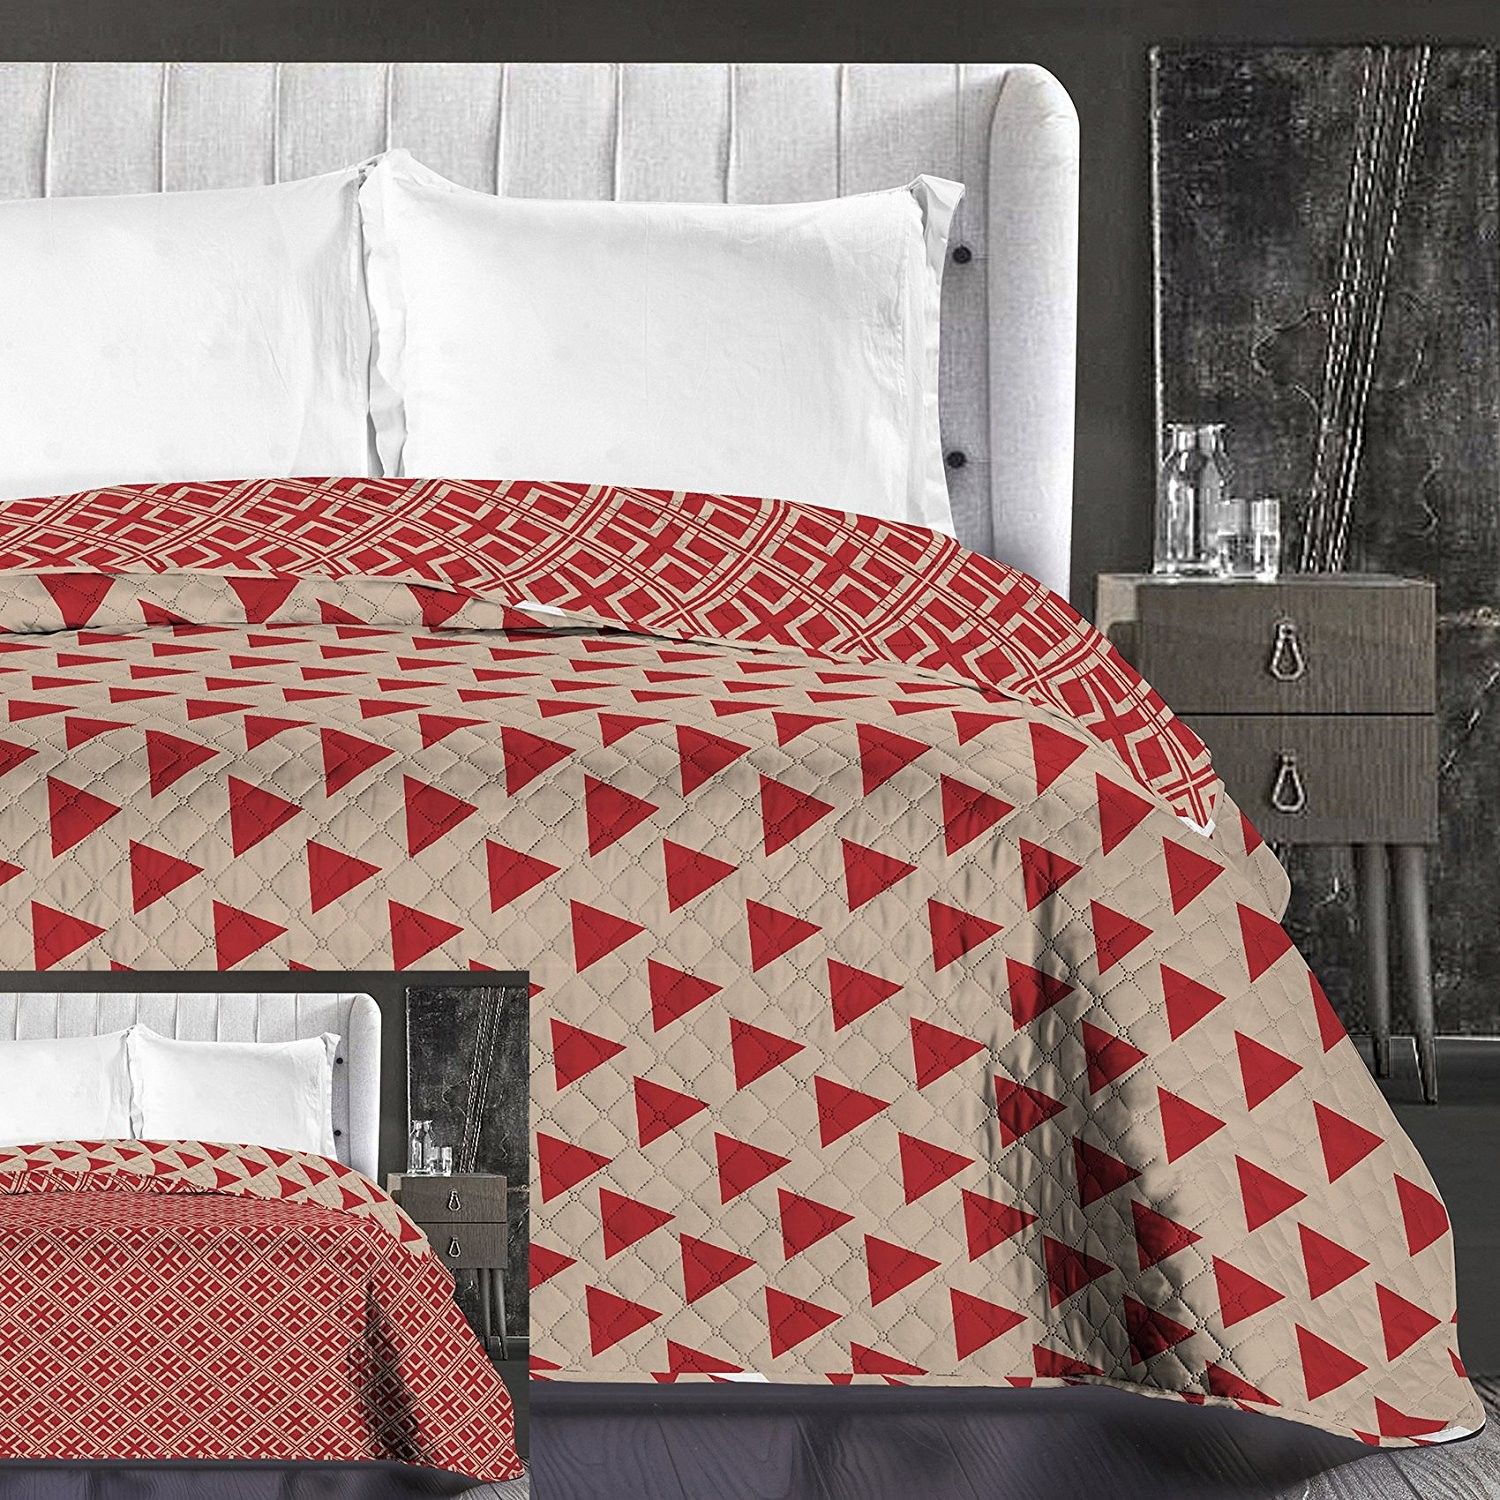 DomTextilu Luxusné béžové prehozy na posteľ obojstranné Šírka: 170 cm | Dĺžka: 210 cm 8001-21832